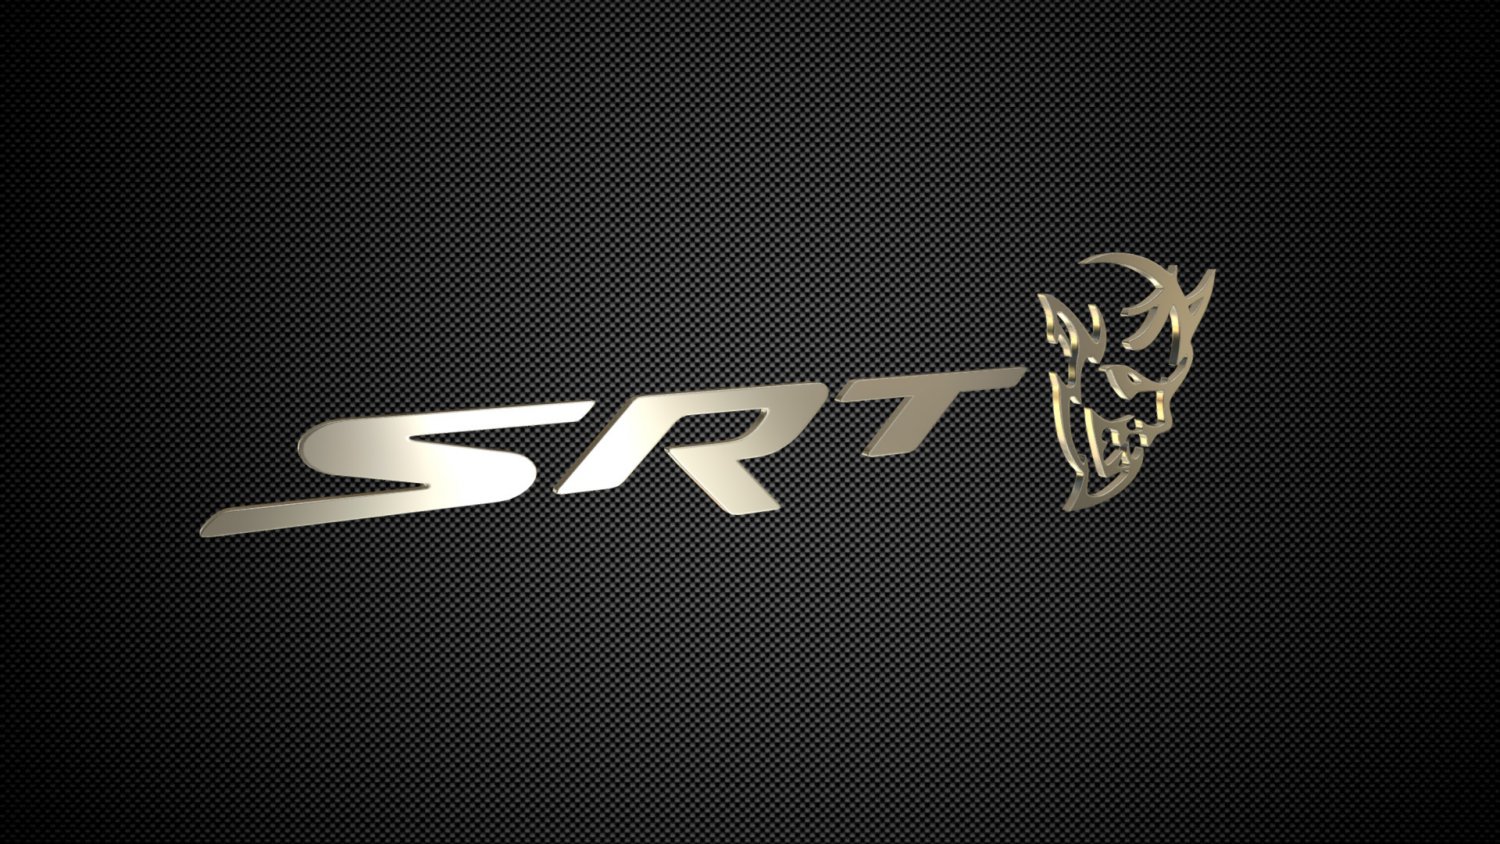 Hellcat Srt Logo – BRIK